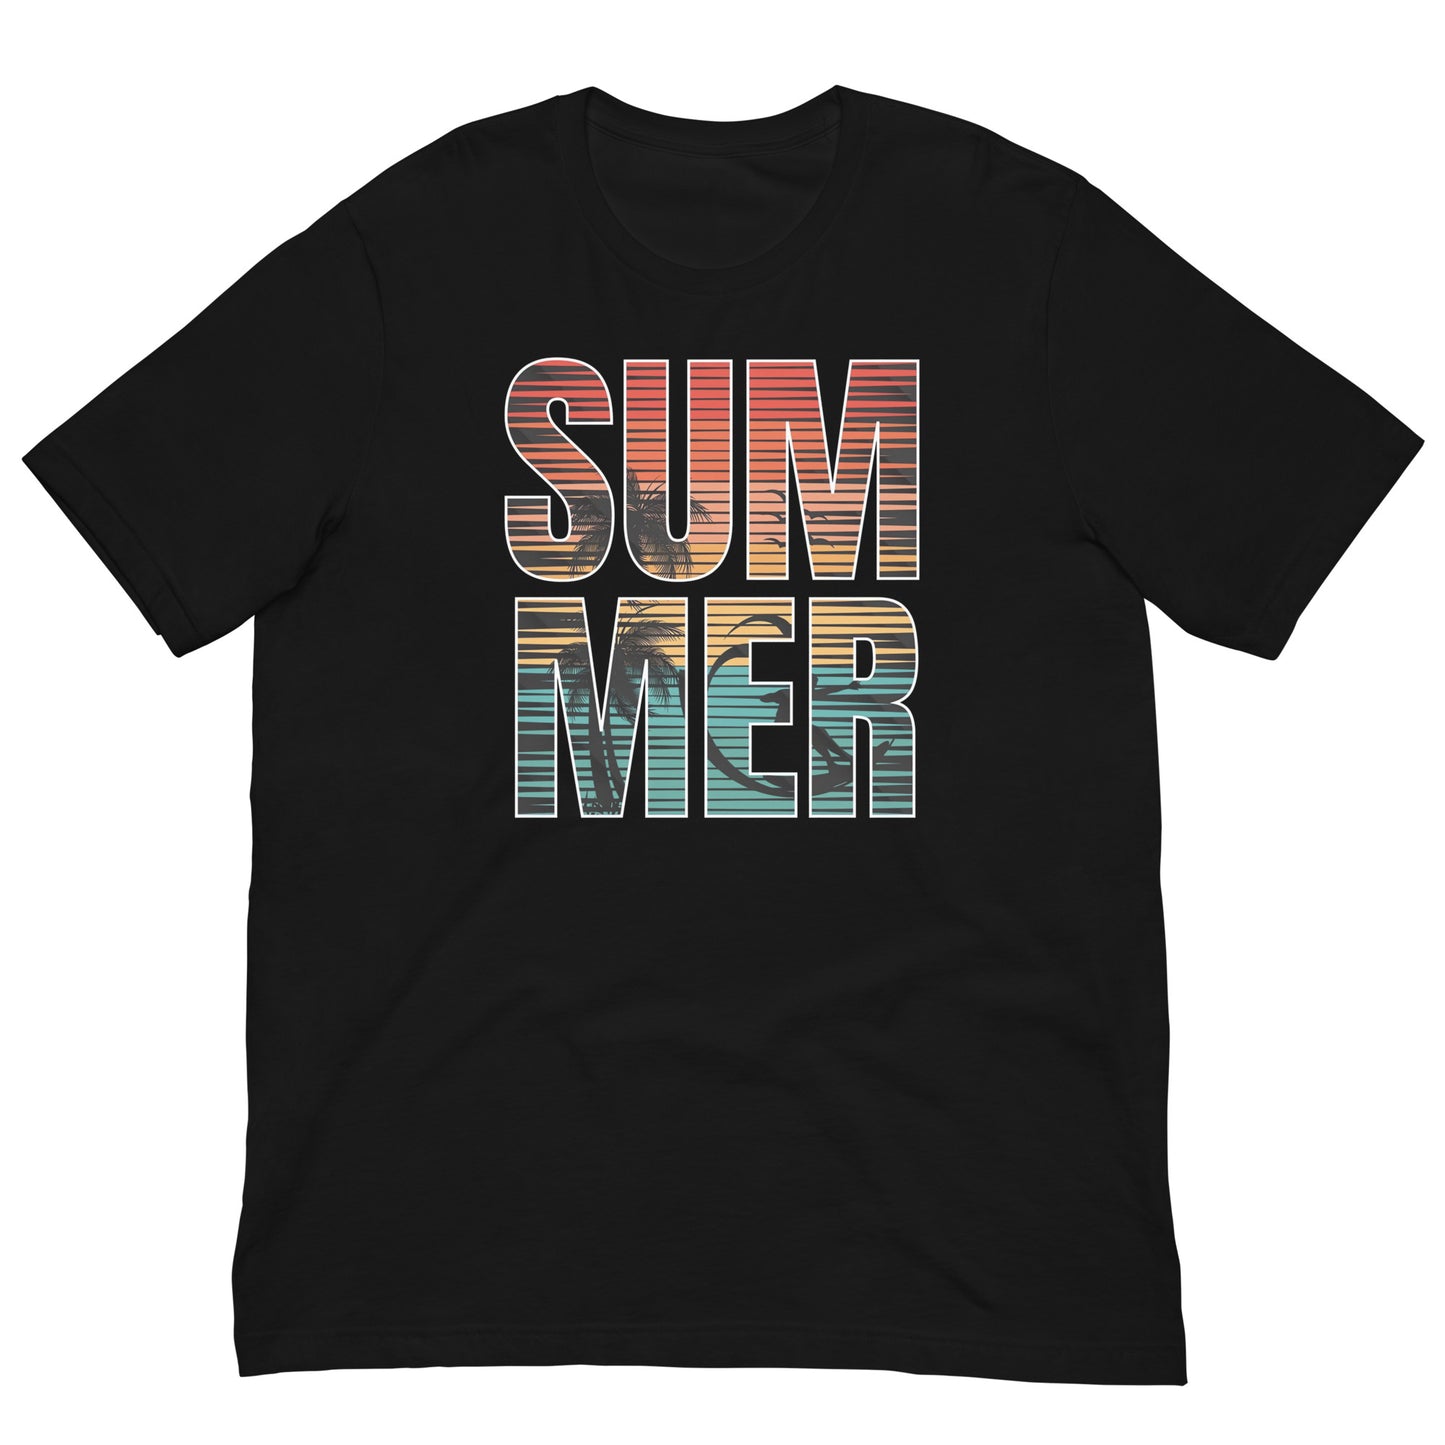 Consigue el mejor merch de El Paredón: camisetas, sudaderas y más con estilo único. Compra ahora: Playera de Summer Vibes